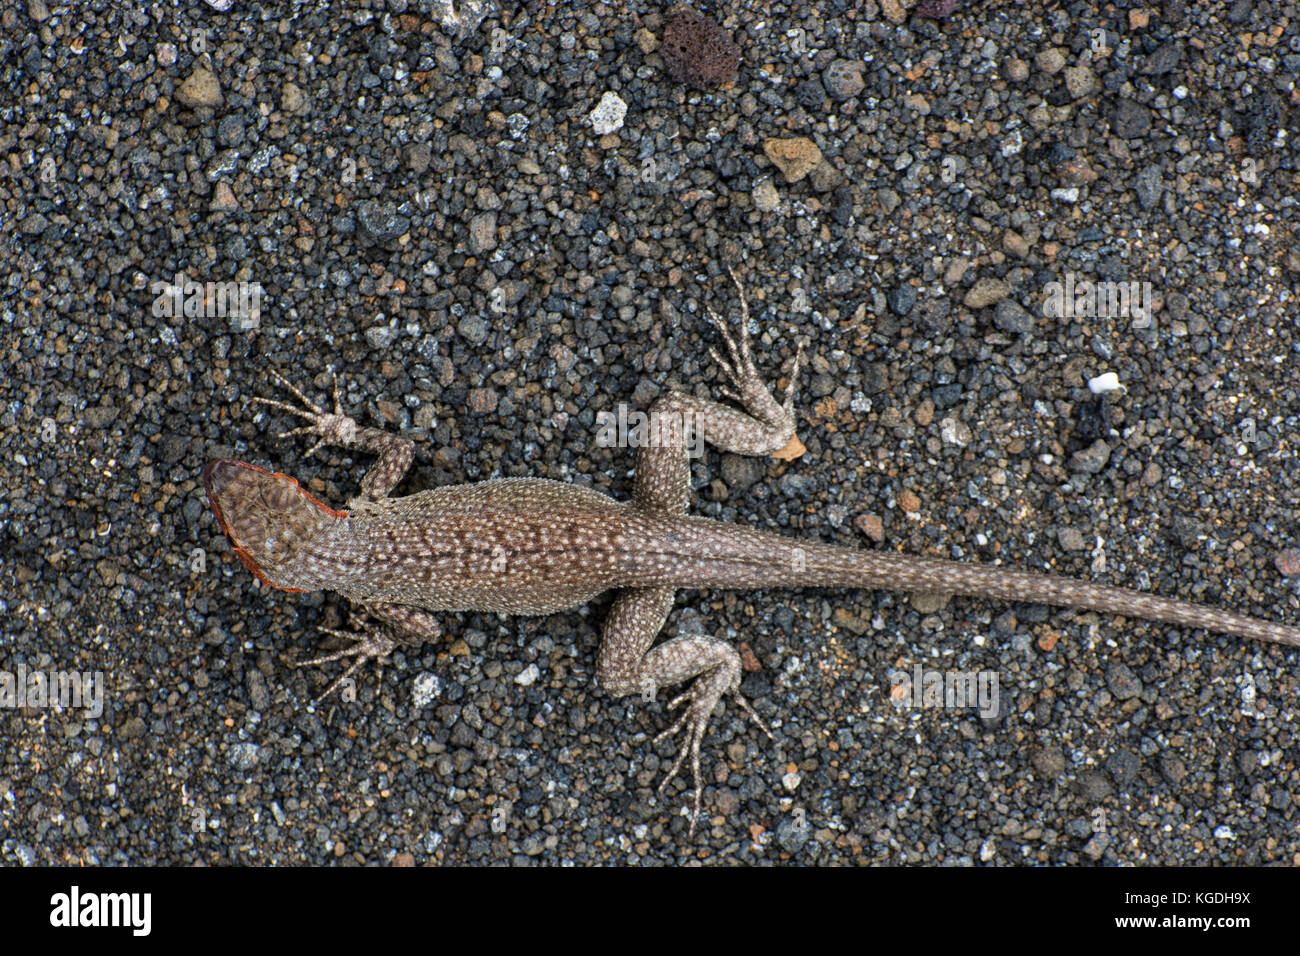 Ein lavastrom Lizard (Microlophus albemariensi) ist in seinen sandigen Umgebung getarnt, die Muster auf der Rückseite helfen, es sich harmonisch in die Umgebung ein. Stockfoto